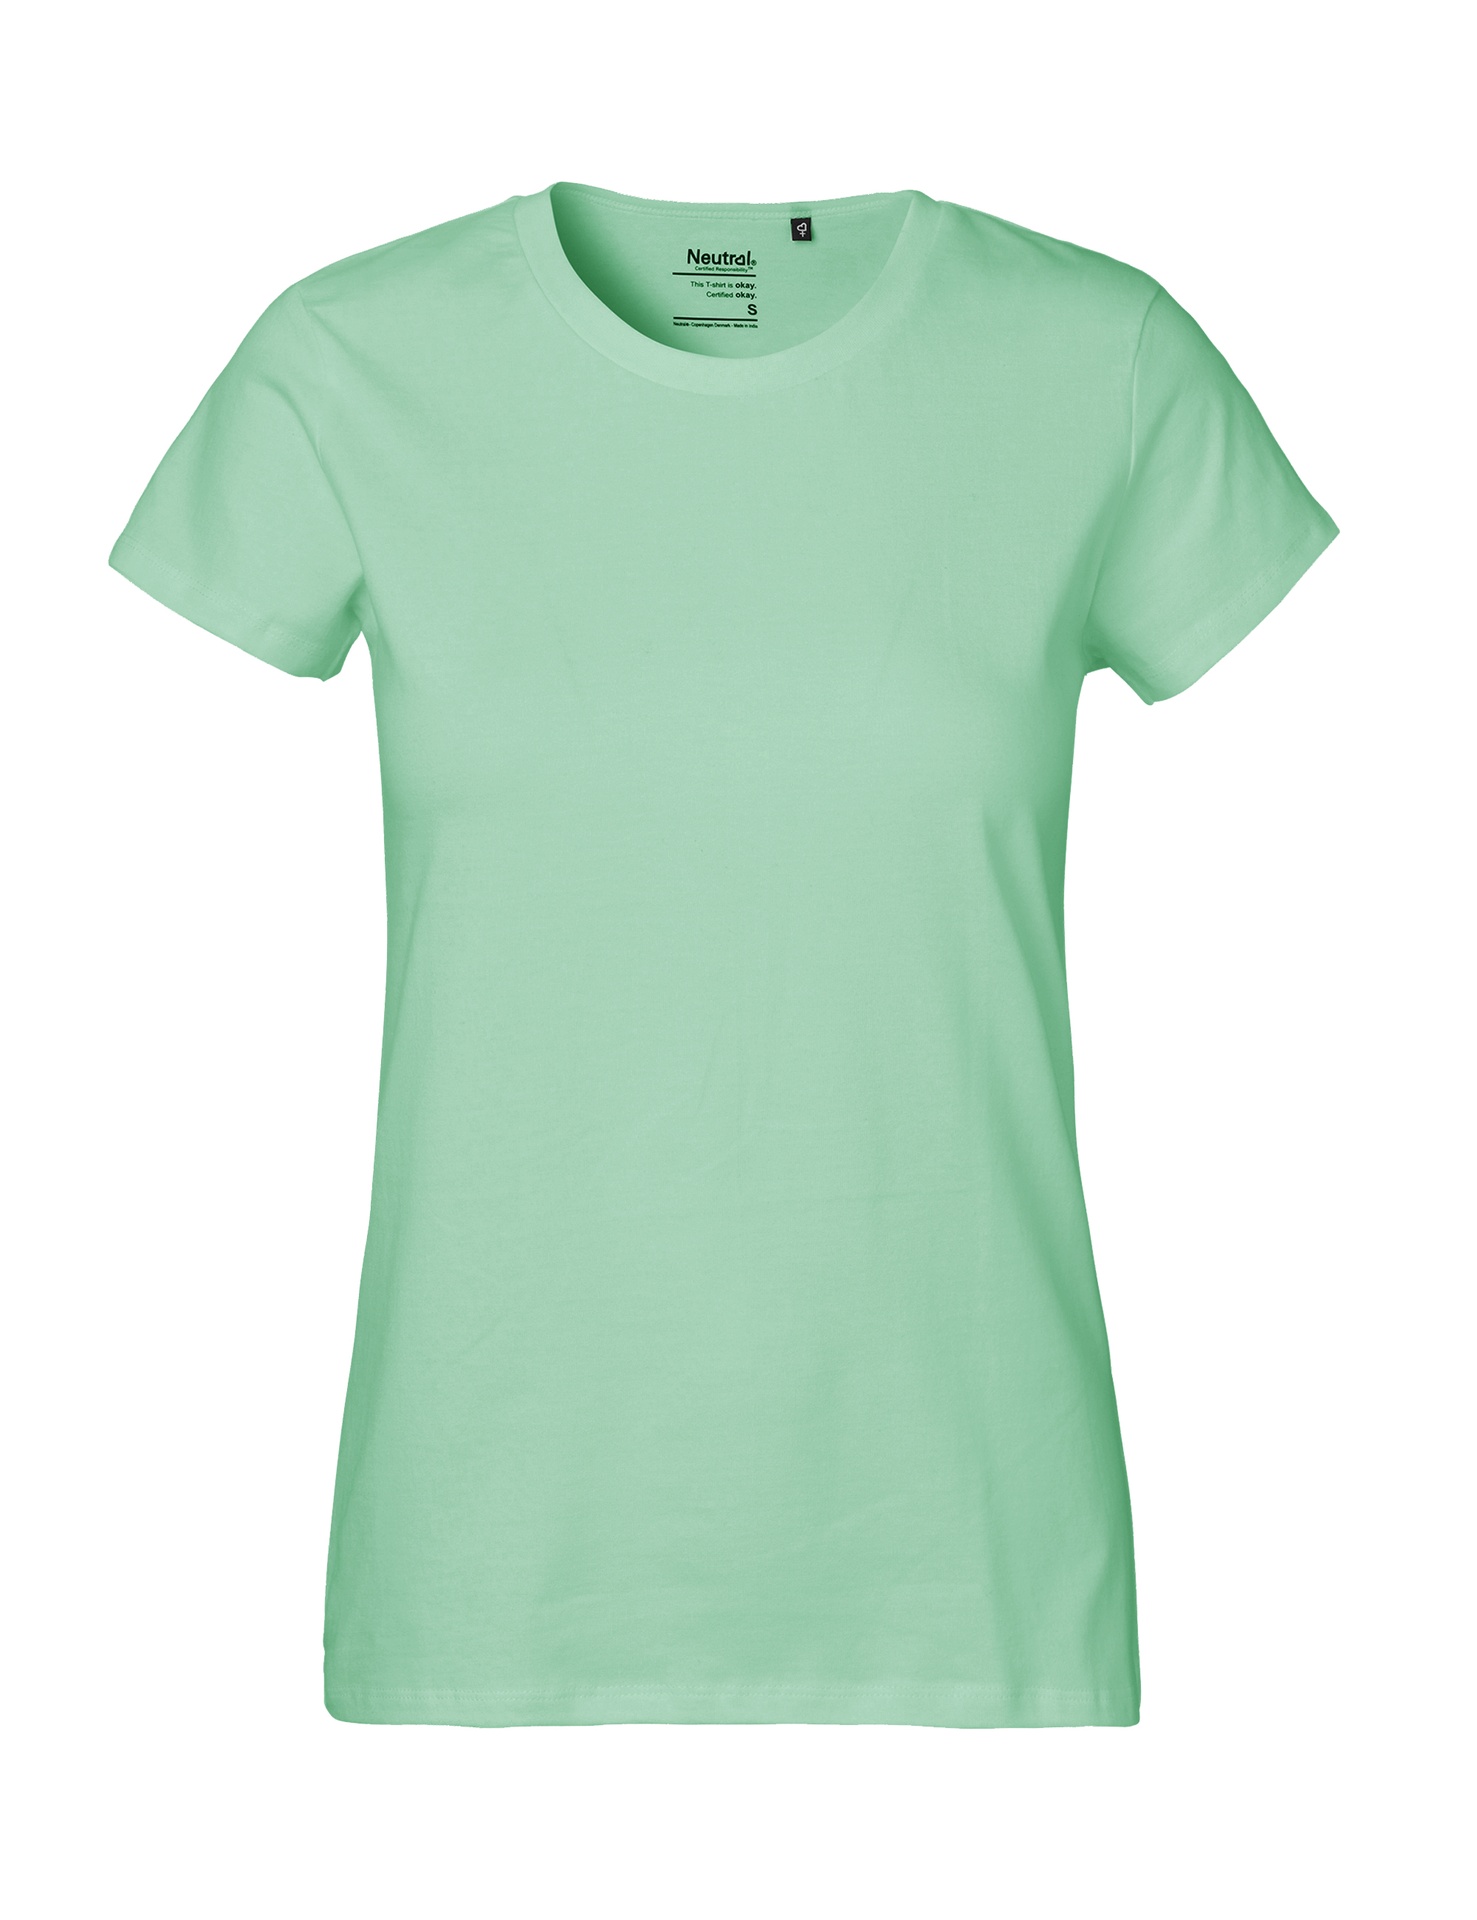 [PR/04110] Ladies Classic T-Shirt (Dusty Mint 40, 2XL)